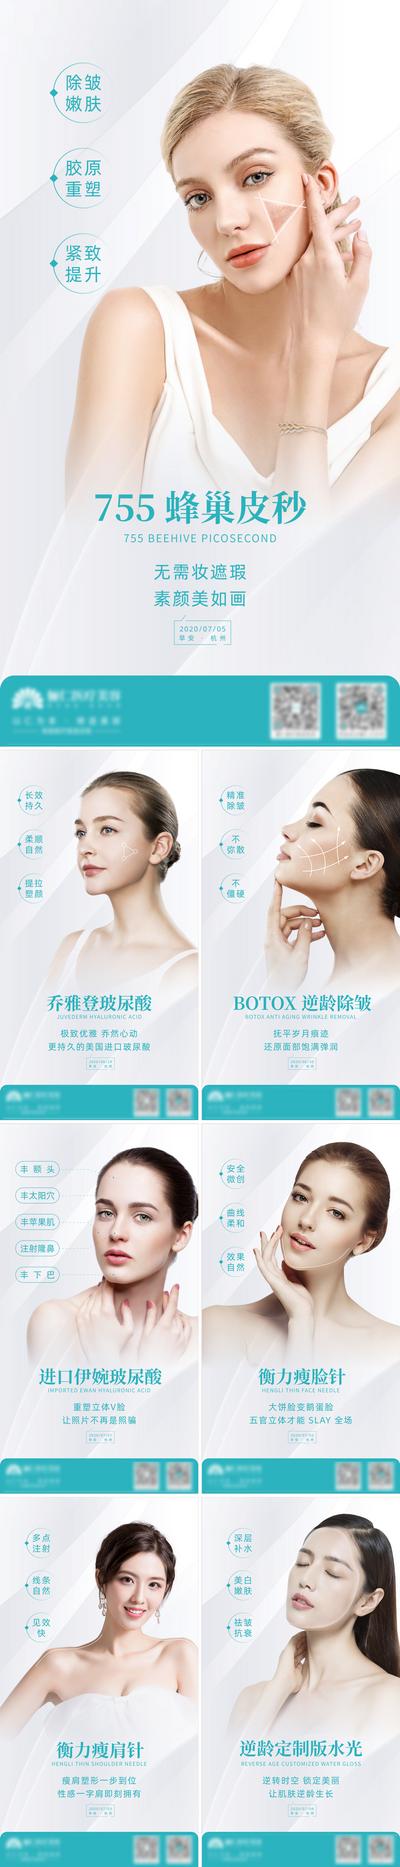 南门网 海报 医美 整形 美容 人物 皮秒 瘦脸针 玻尿酸 水光 系列